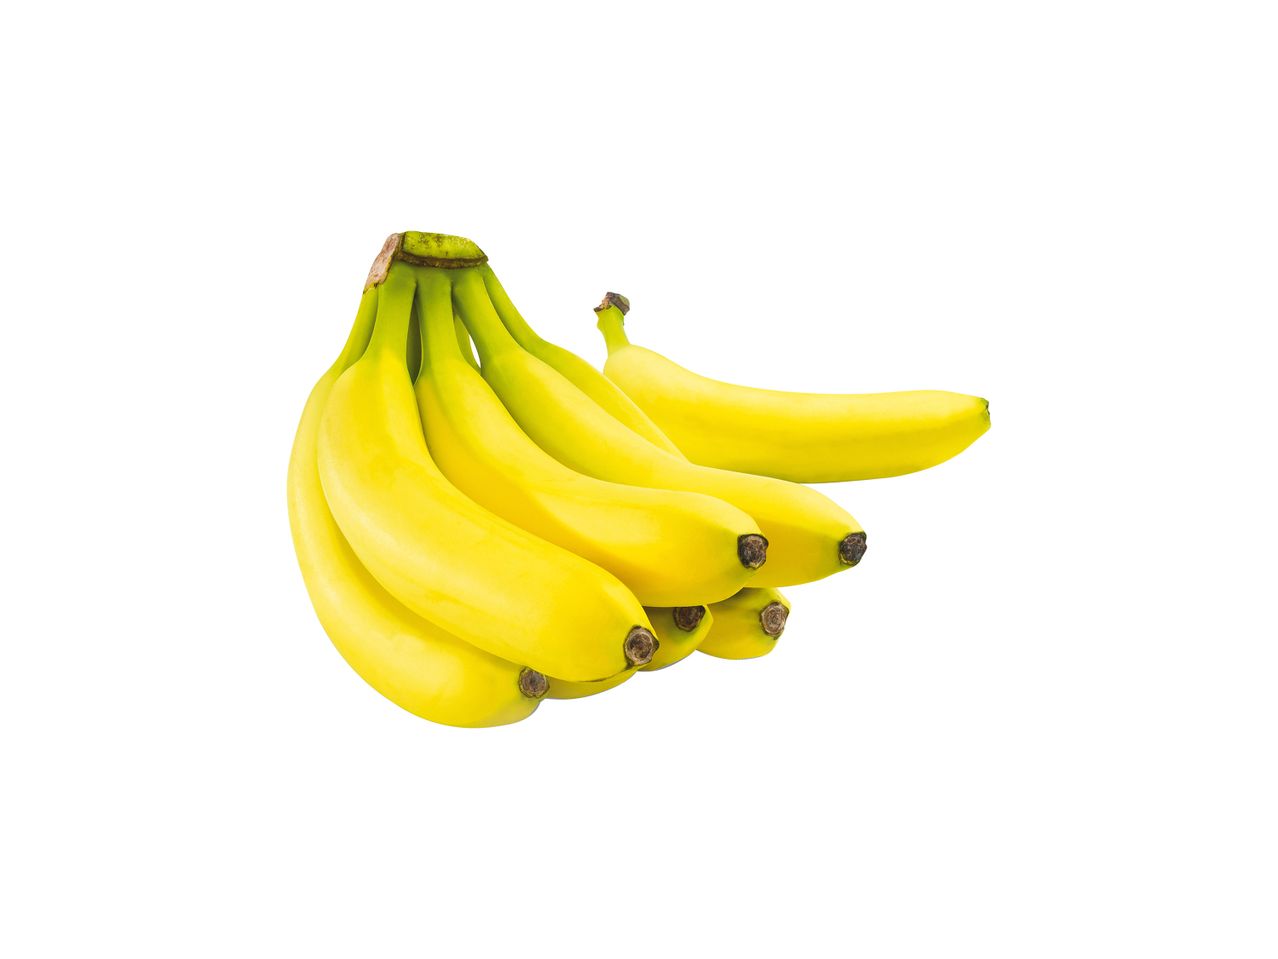 Άνοιγμα σε πλήρης οθόνη: Μπανάνες - Εικόνα 1